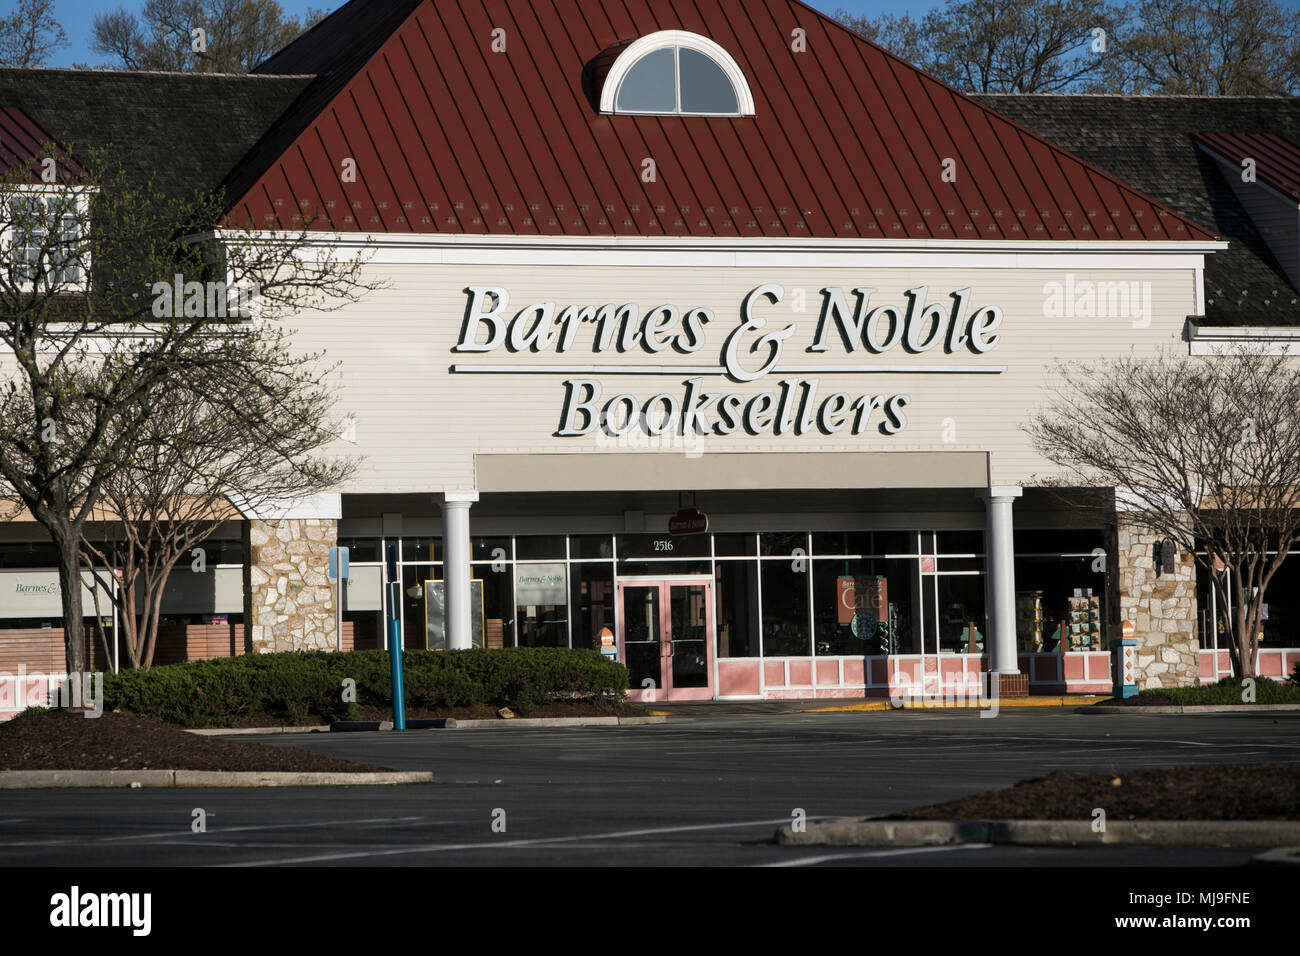 Un logo affiche à l'extérieur d'un magasin Barnes & Noble Booksellers dans Annapolis, Maryland le 29 avril 2018. Banque D'Images